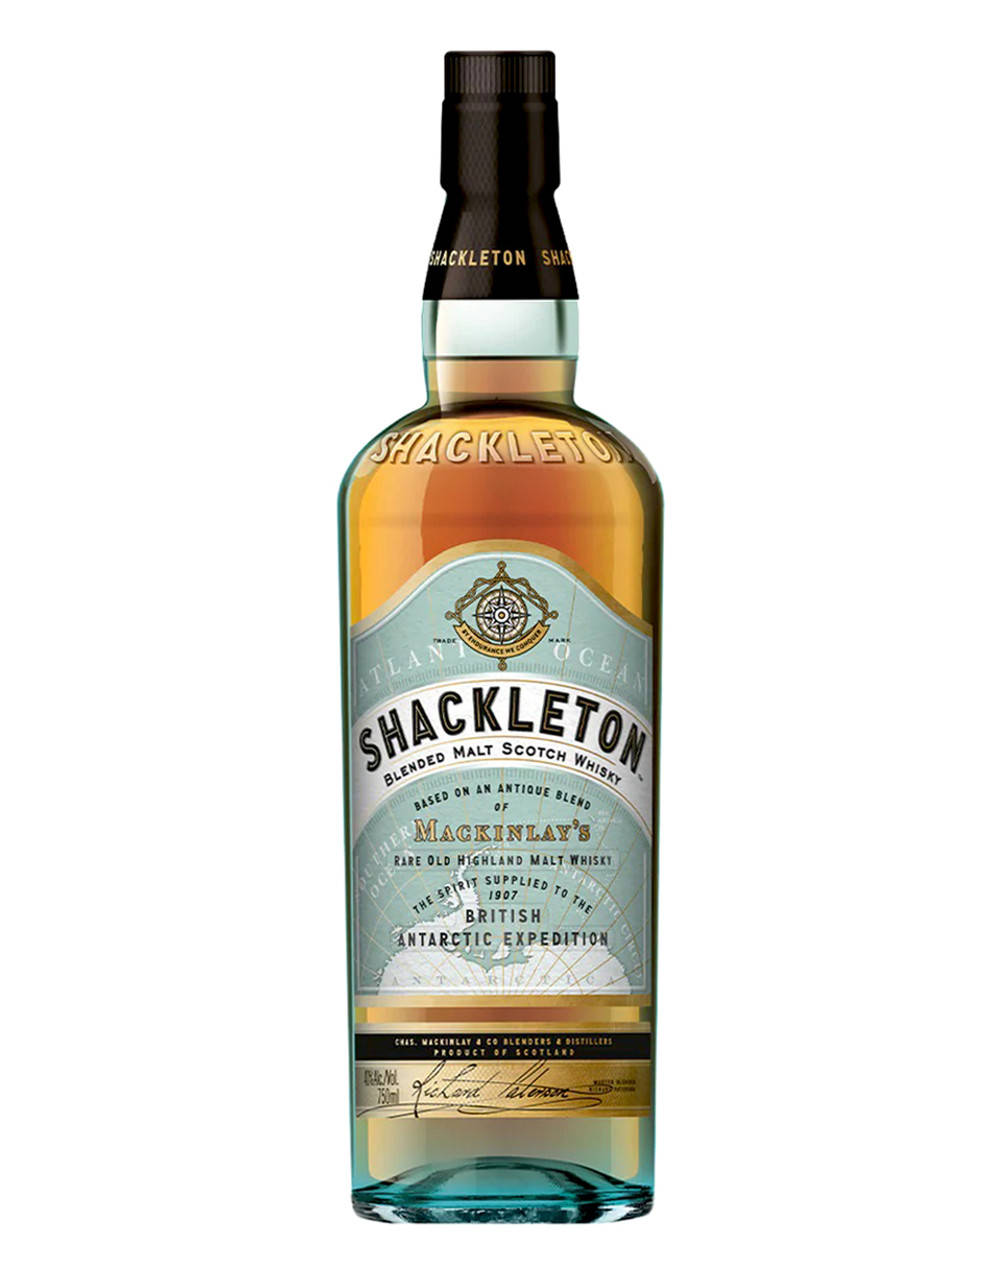 Shackletonwhiskyflaska Reklamfotografi. Wallpaper